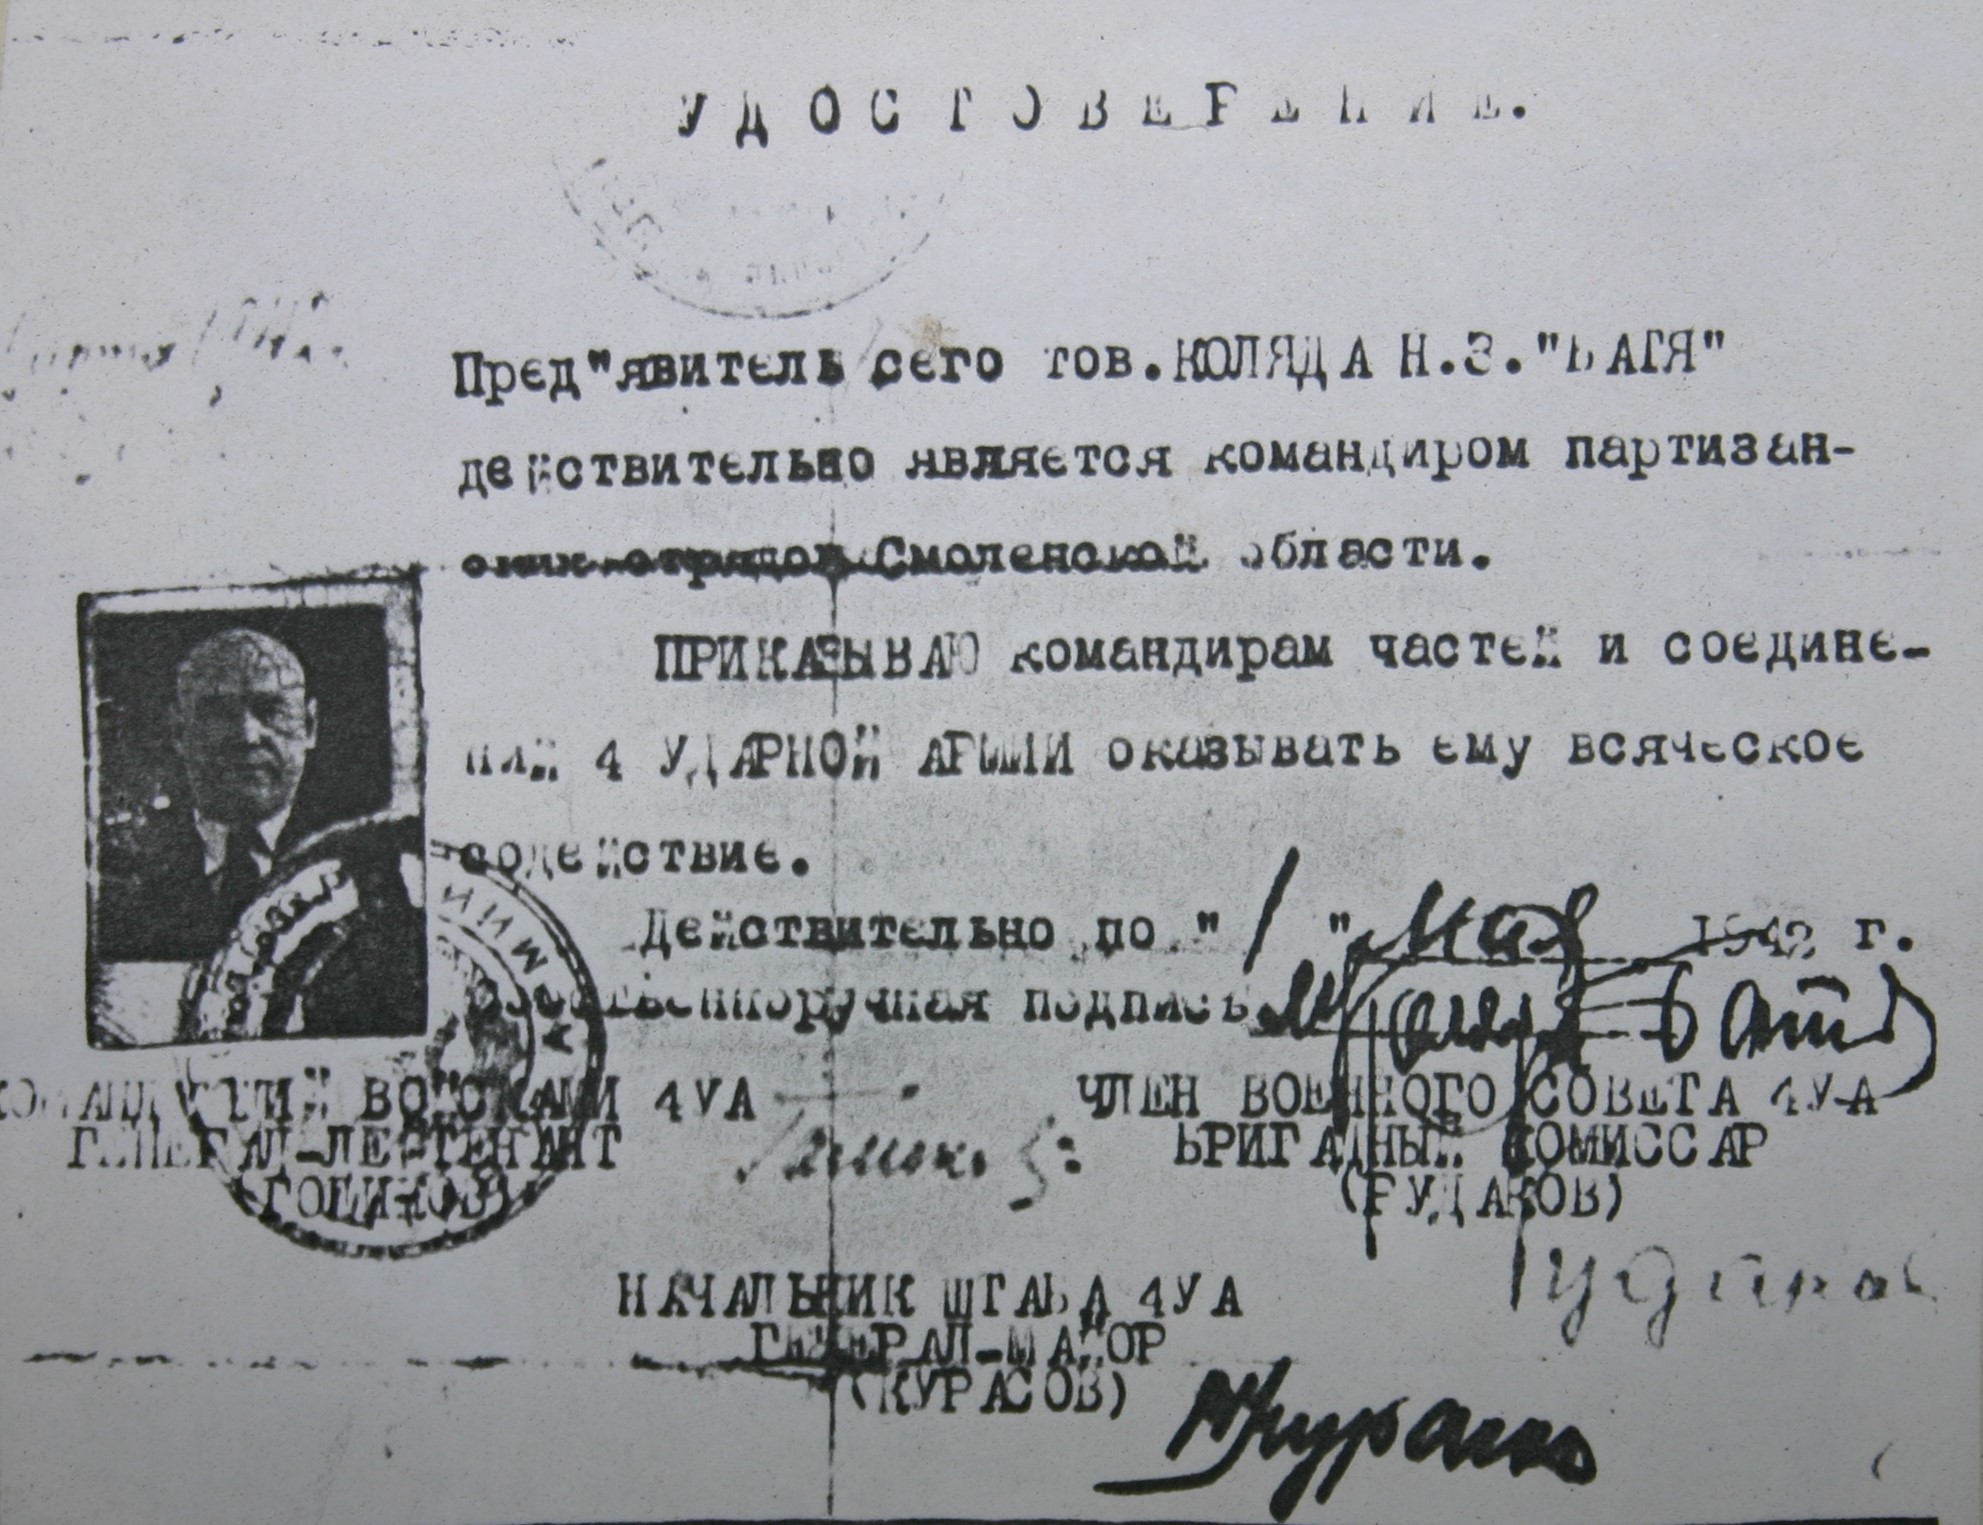 Удостоверение Н.З. Коляды, подтверждающее, что он командир партизанских отрядов Смоленщины, март 1942 года.